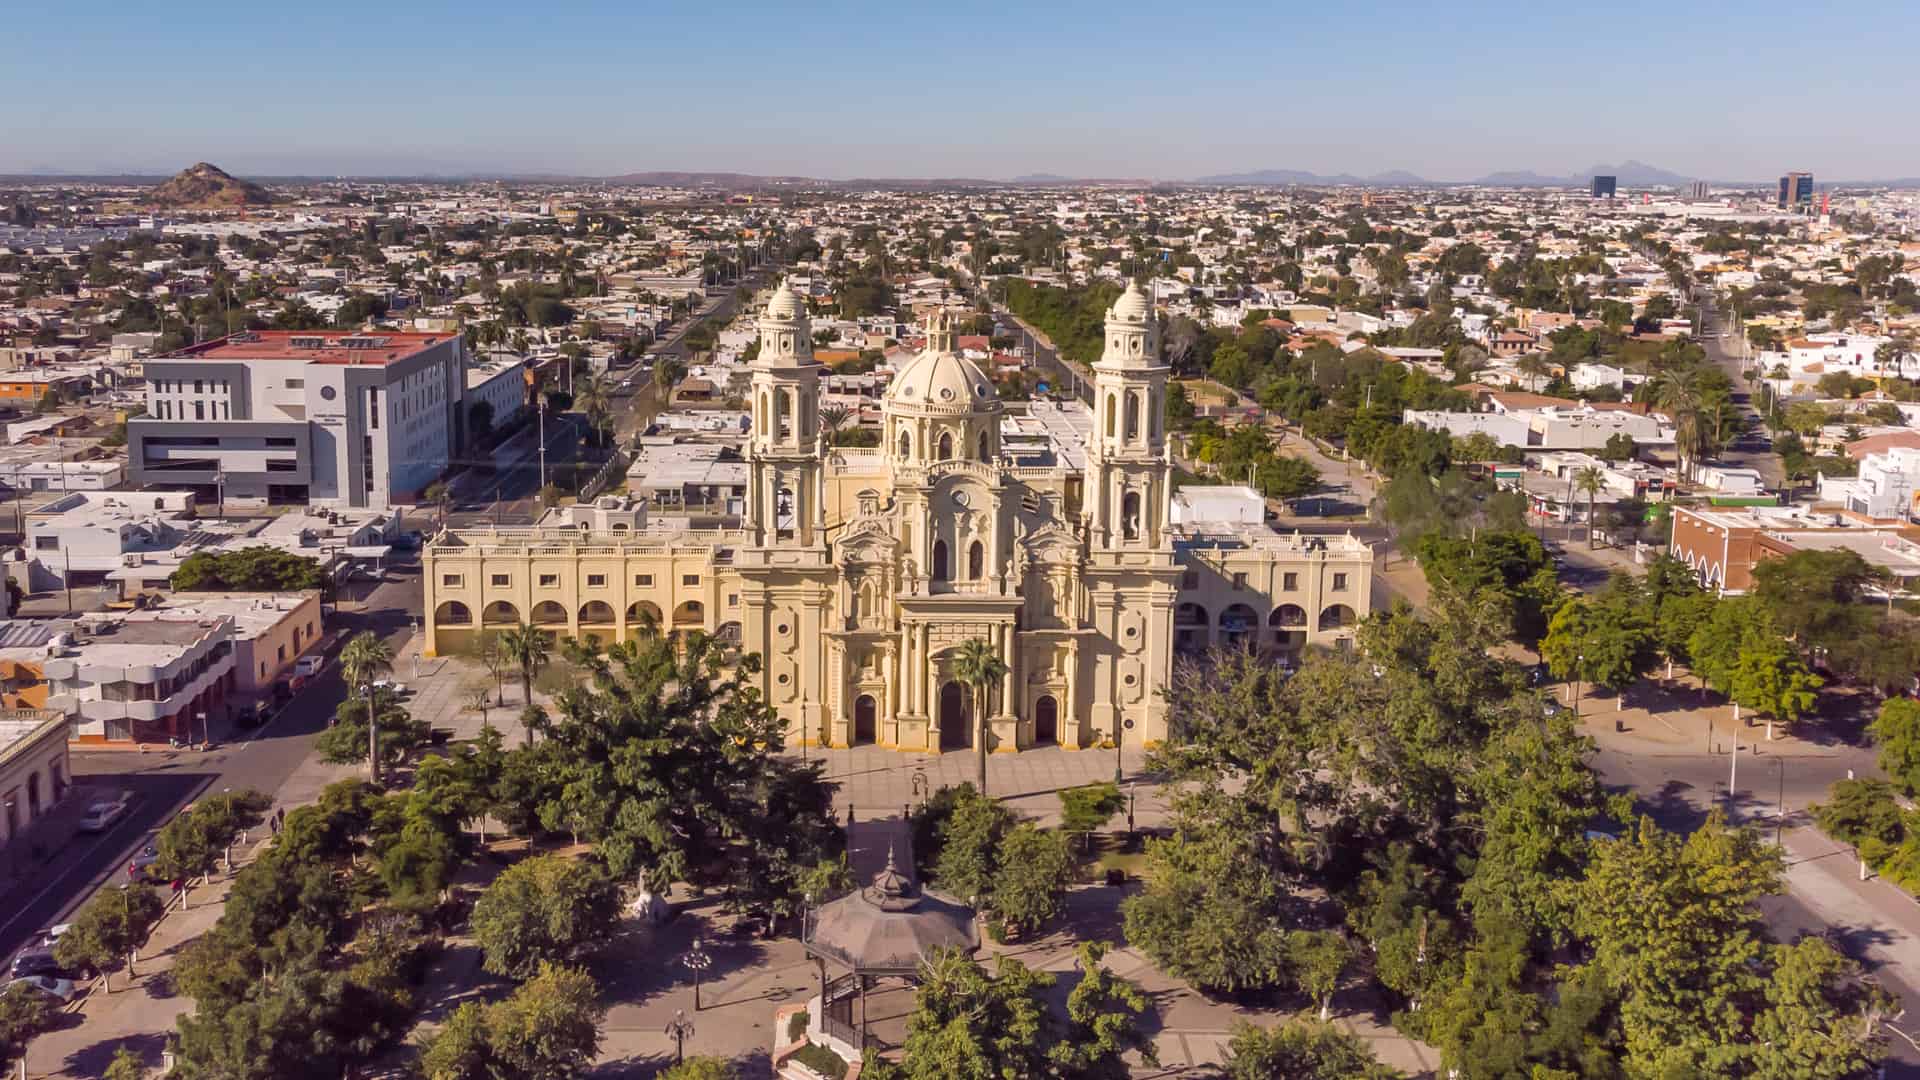 vista aerea de un monumento de la ciudad de hermorsillo mexico donde existen sucursales de dish